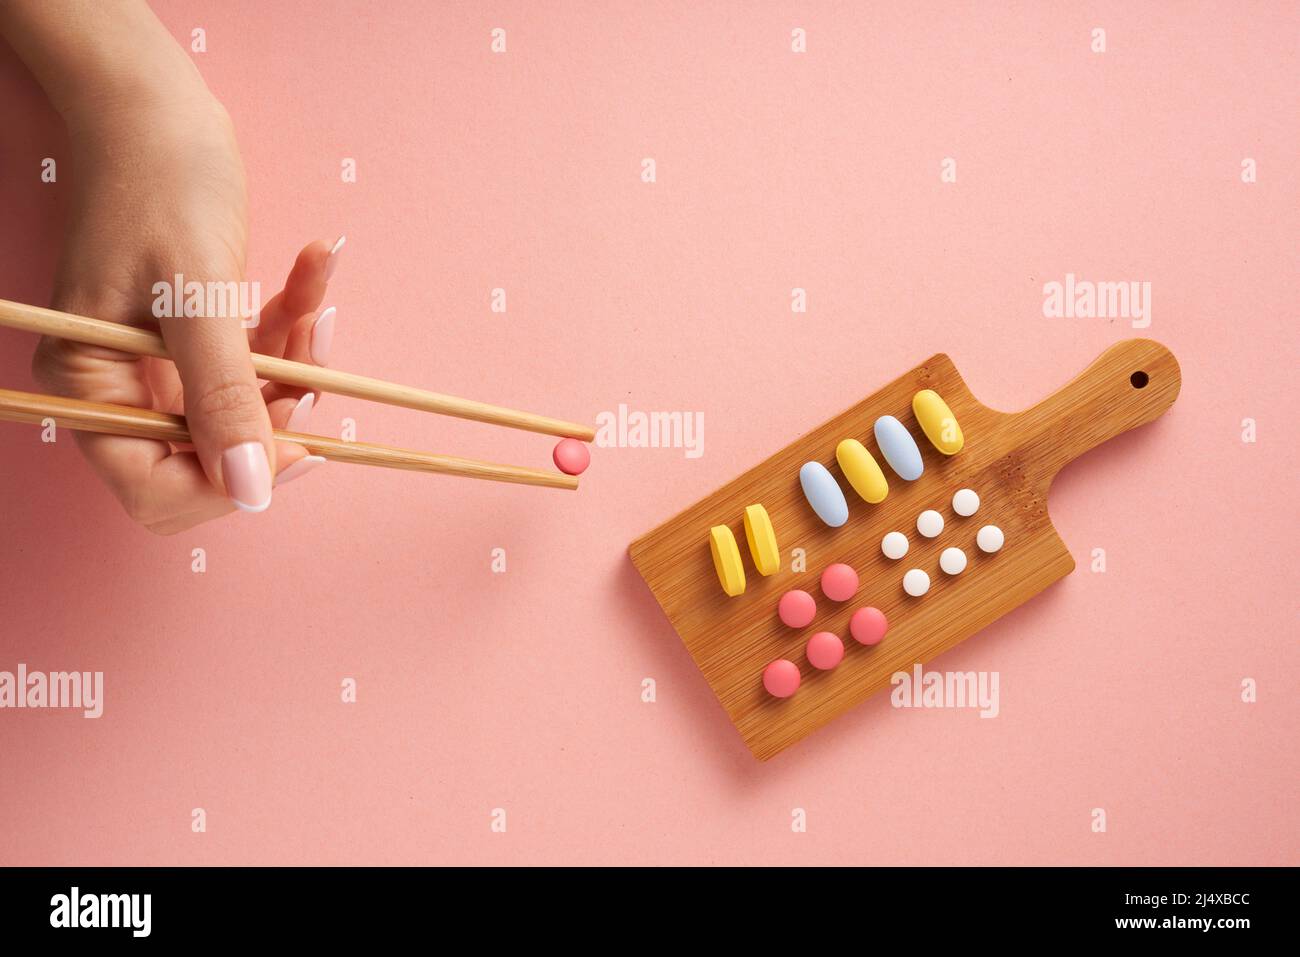 Concept créatif plat photo avec variété de suppléments nutritionnels vitamines et pilules disposés comme plaque de sushi sur fond rose. Conception minimale. Banque D'Images